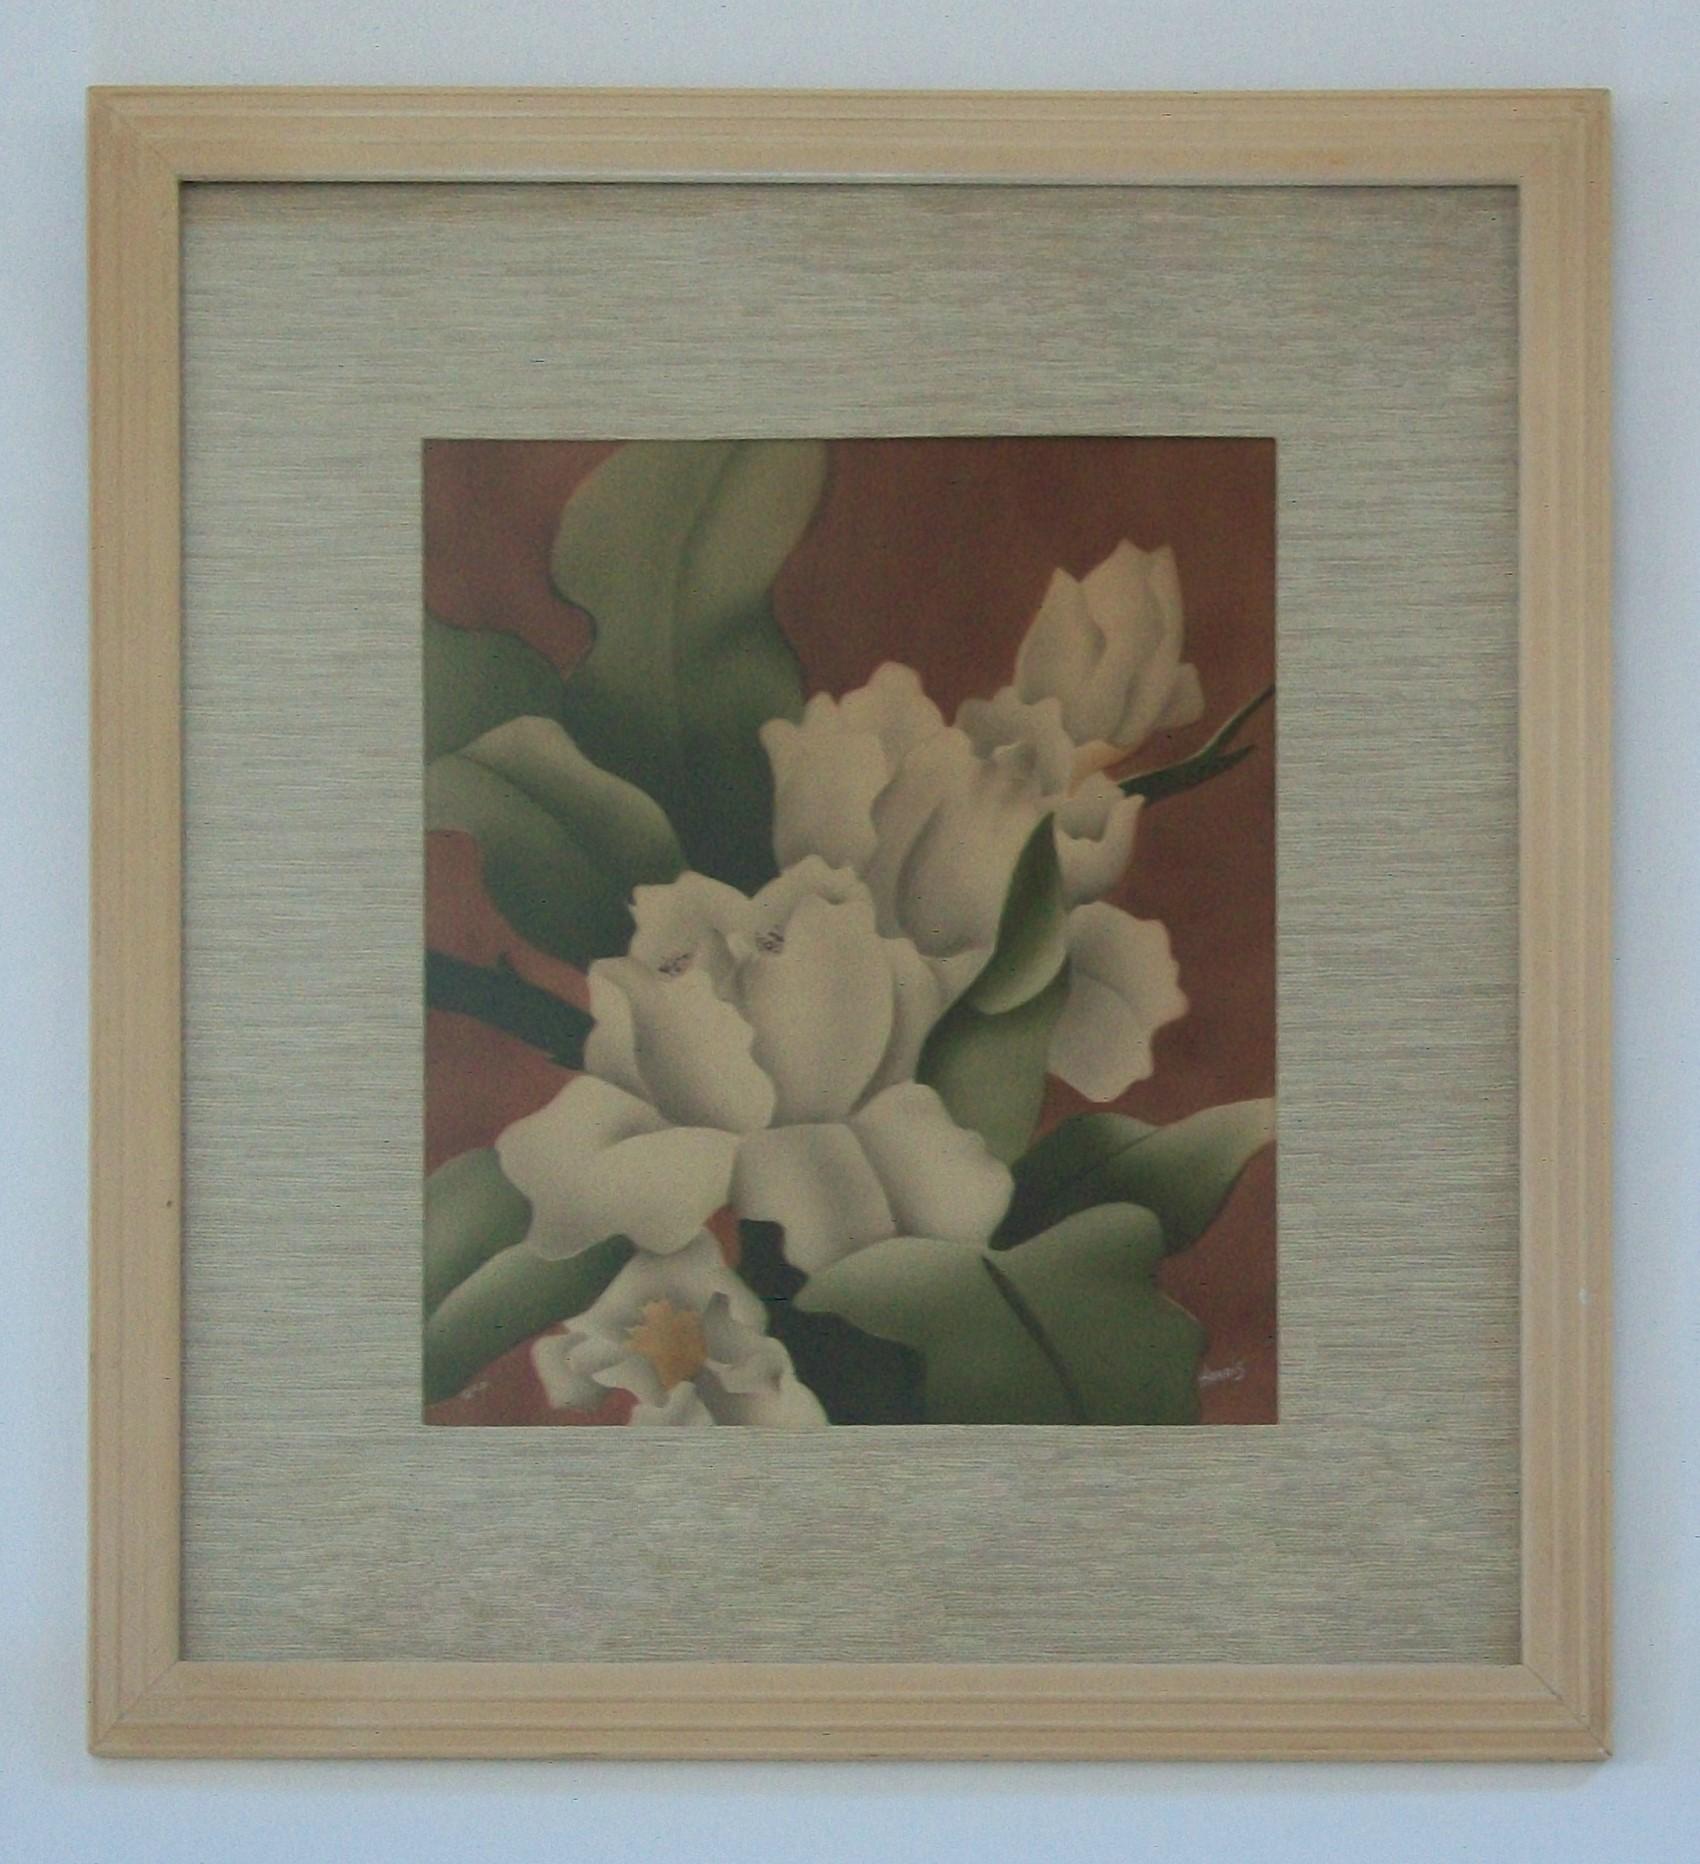 BENJAMIN JORJ HARRIS - NEWMAN DECOR - Amerikanisches Art Deco Airbrush-Gemälde auf Illustrationskarton - zeigt eine überdimensionale Gruppe von weißen Gardenienblüten und -blättern (die Quintessenz des Art Deco) vor einem weinfarbenen Hintergrund -